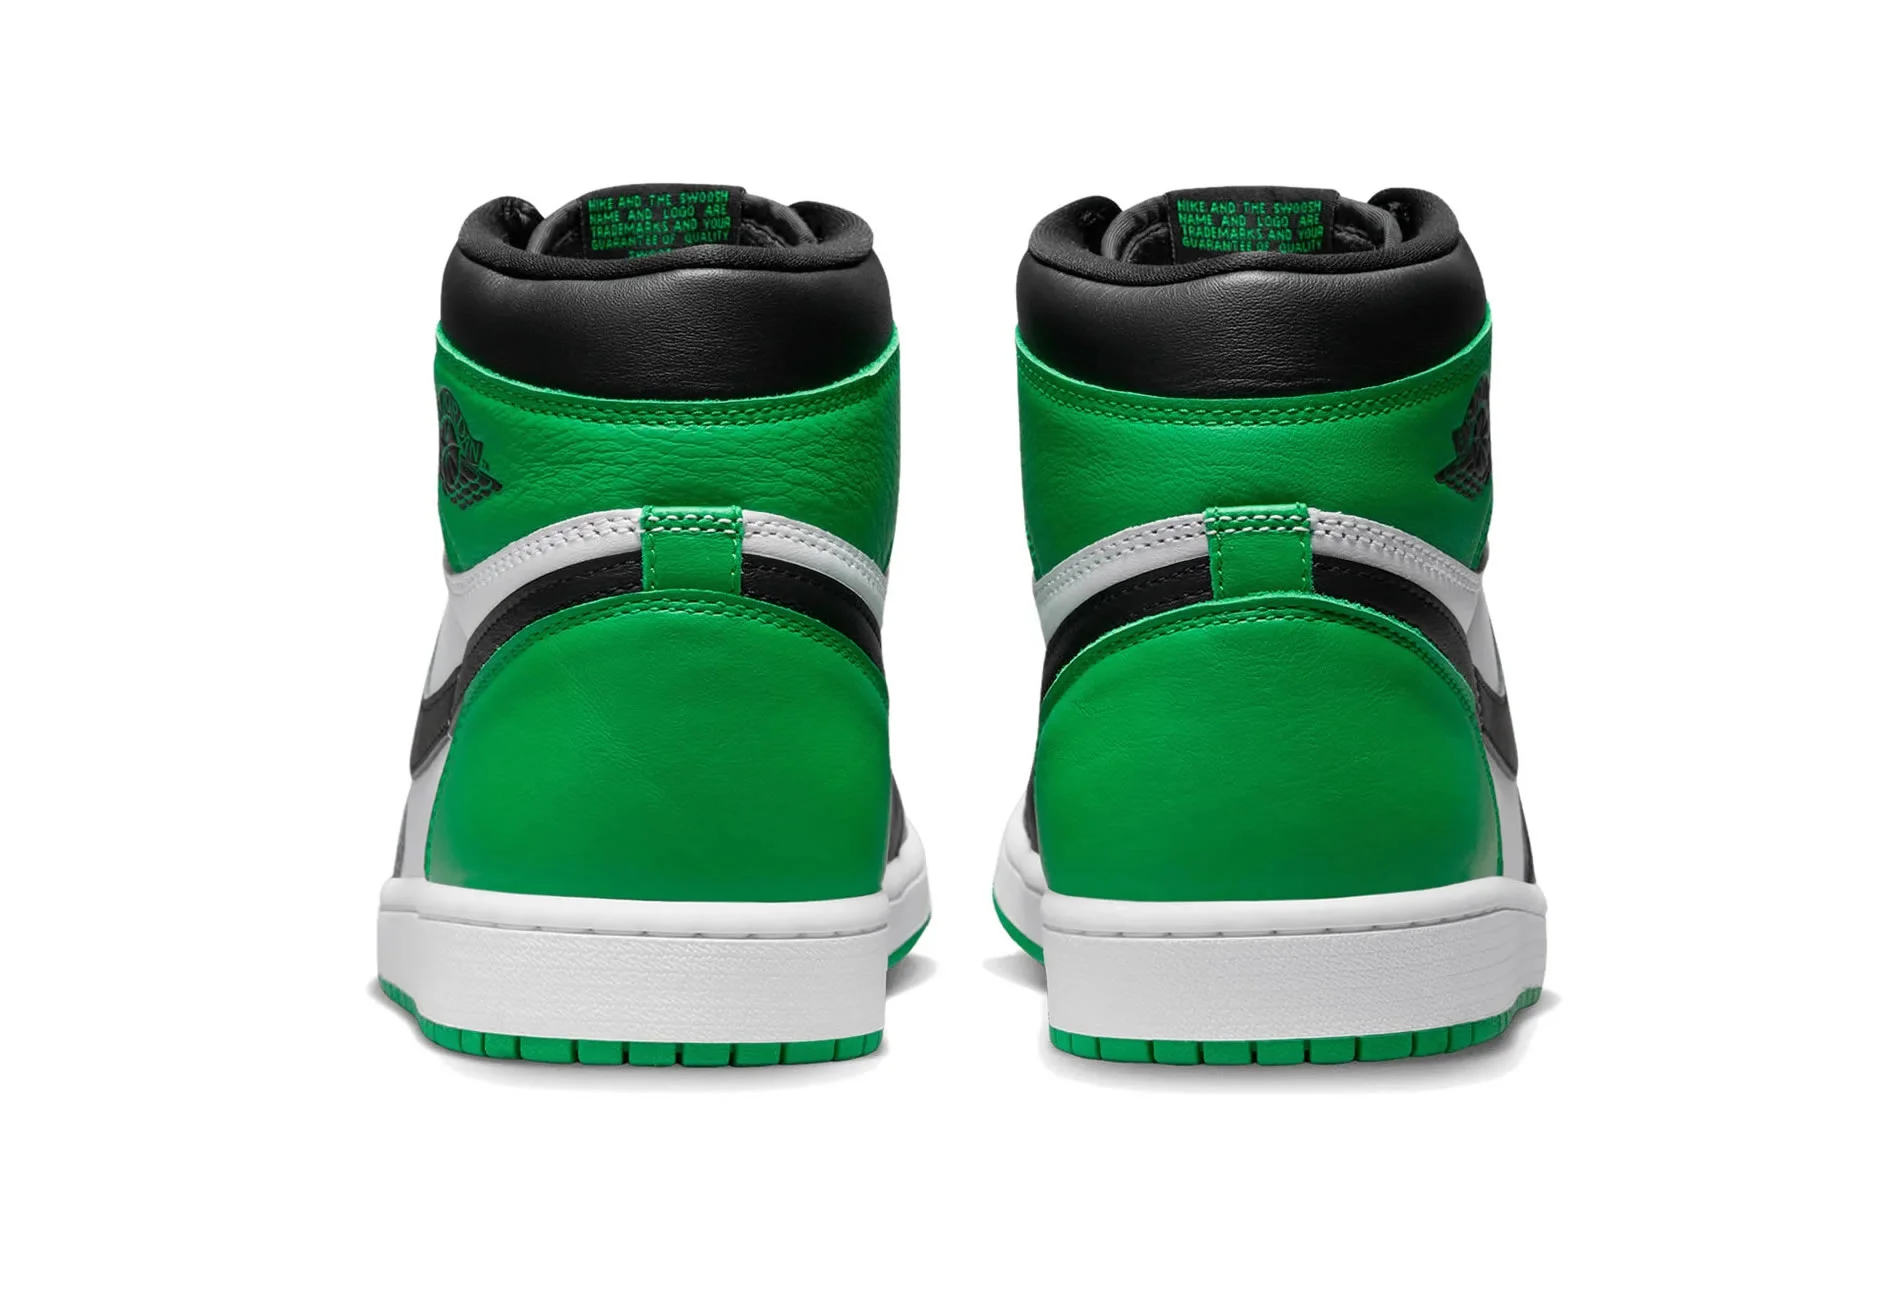 Air Jordan 1 Retro High Og Lucky Green Dz5485 031 Ljr Batch Sneakers (4) - www.ljrofficial.com